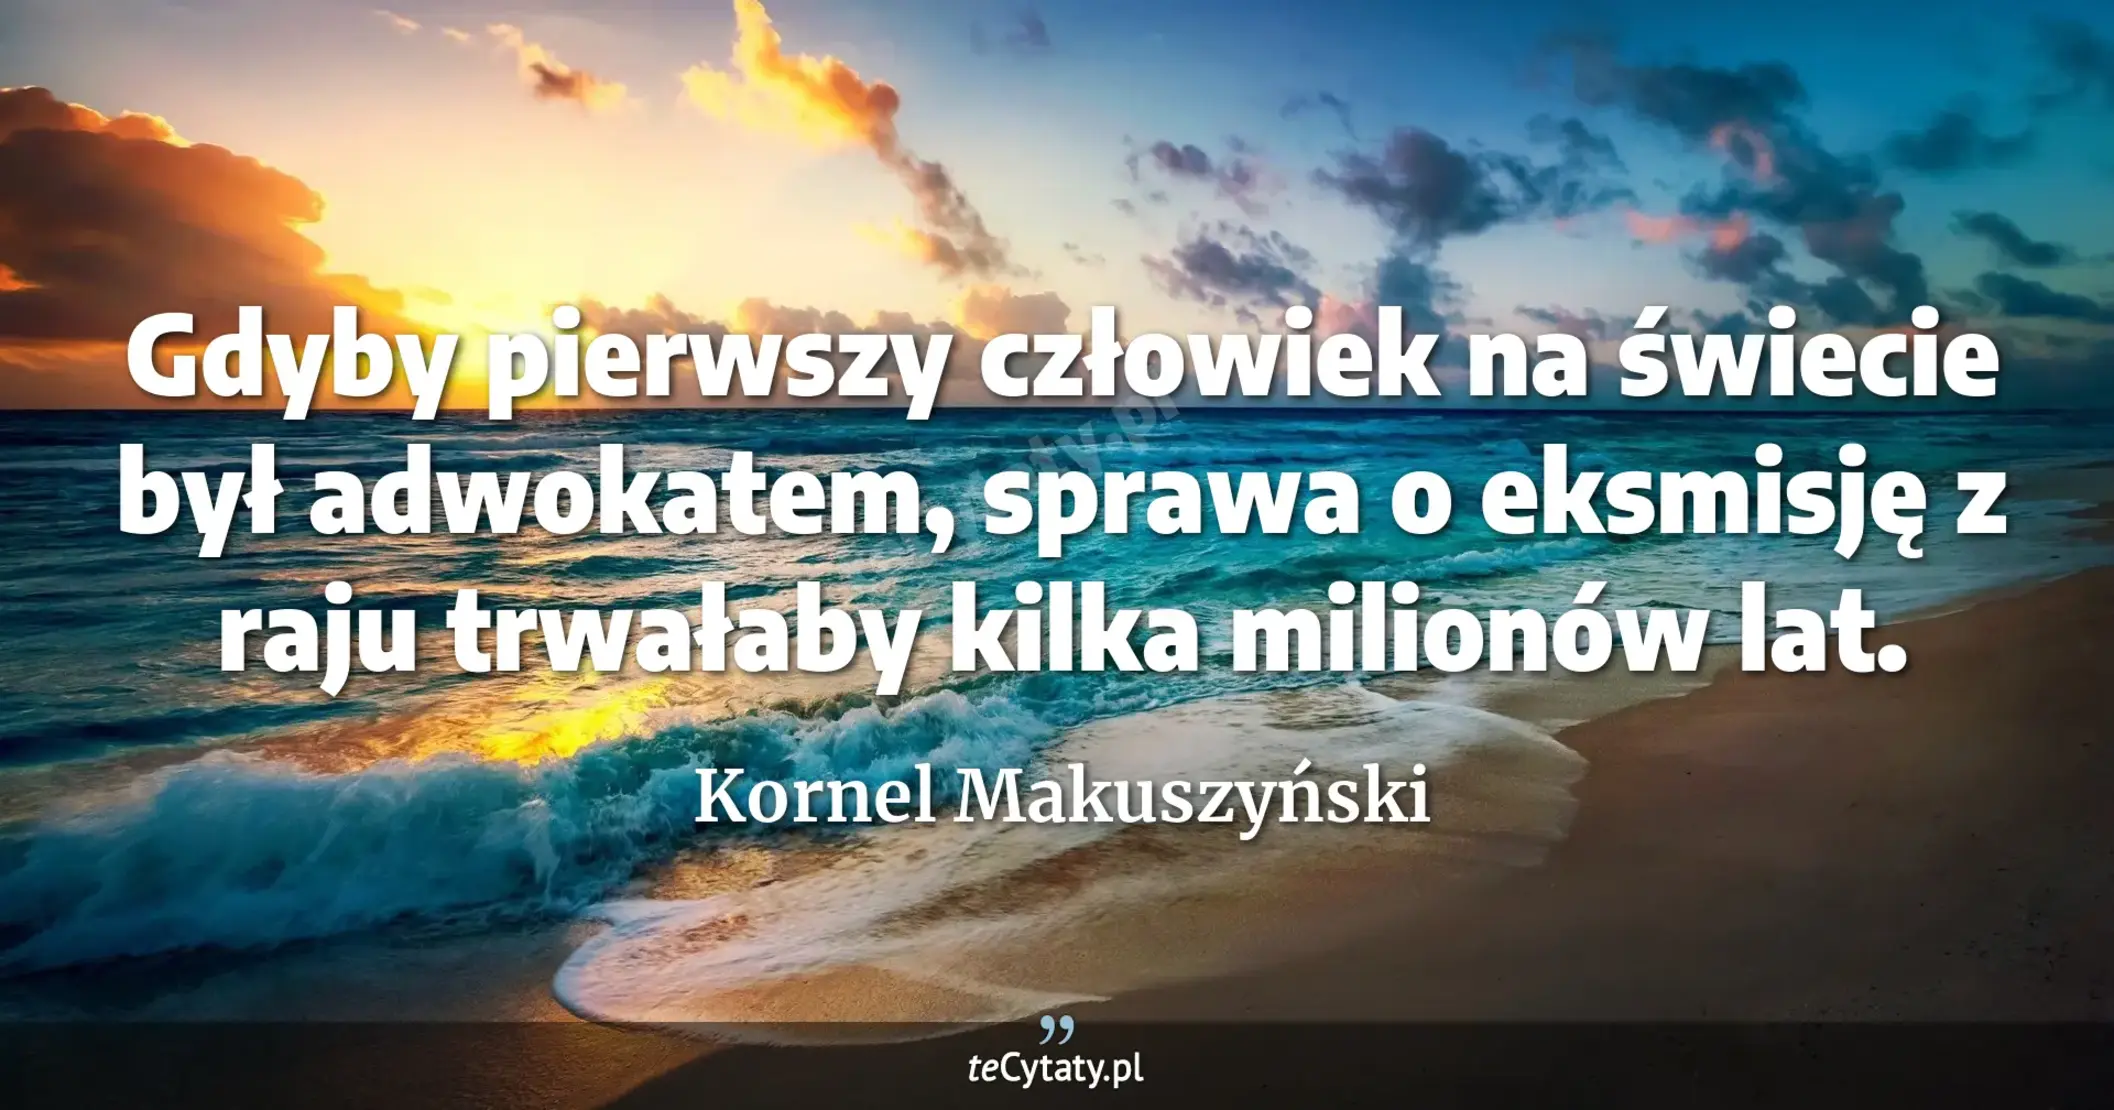 Gdyby pierwszy człowiek na świecie był adwokatem, sprawa o eksmisję z raju trwałaby kilka milionów lat. - Kornel Makuszyński